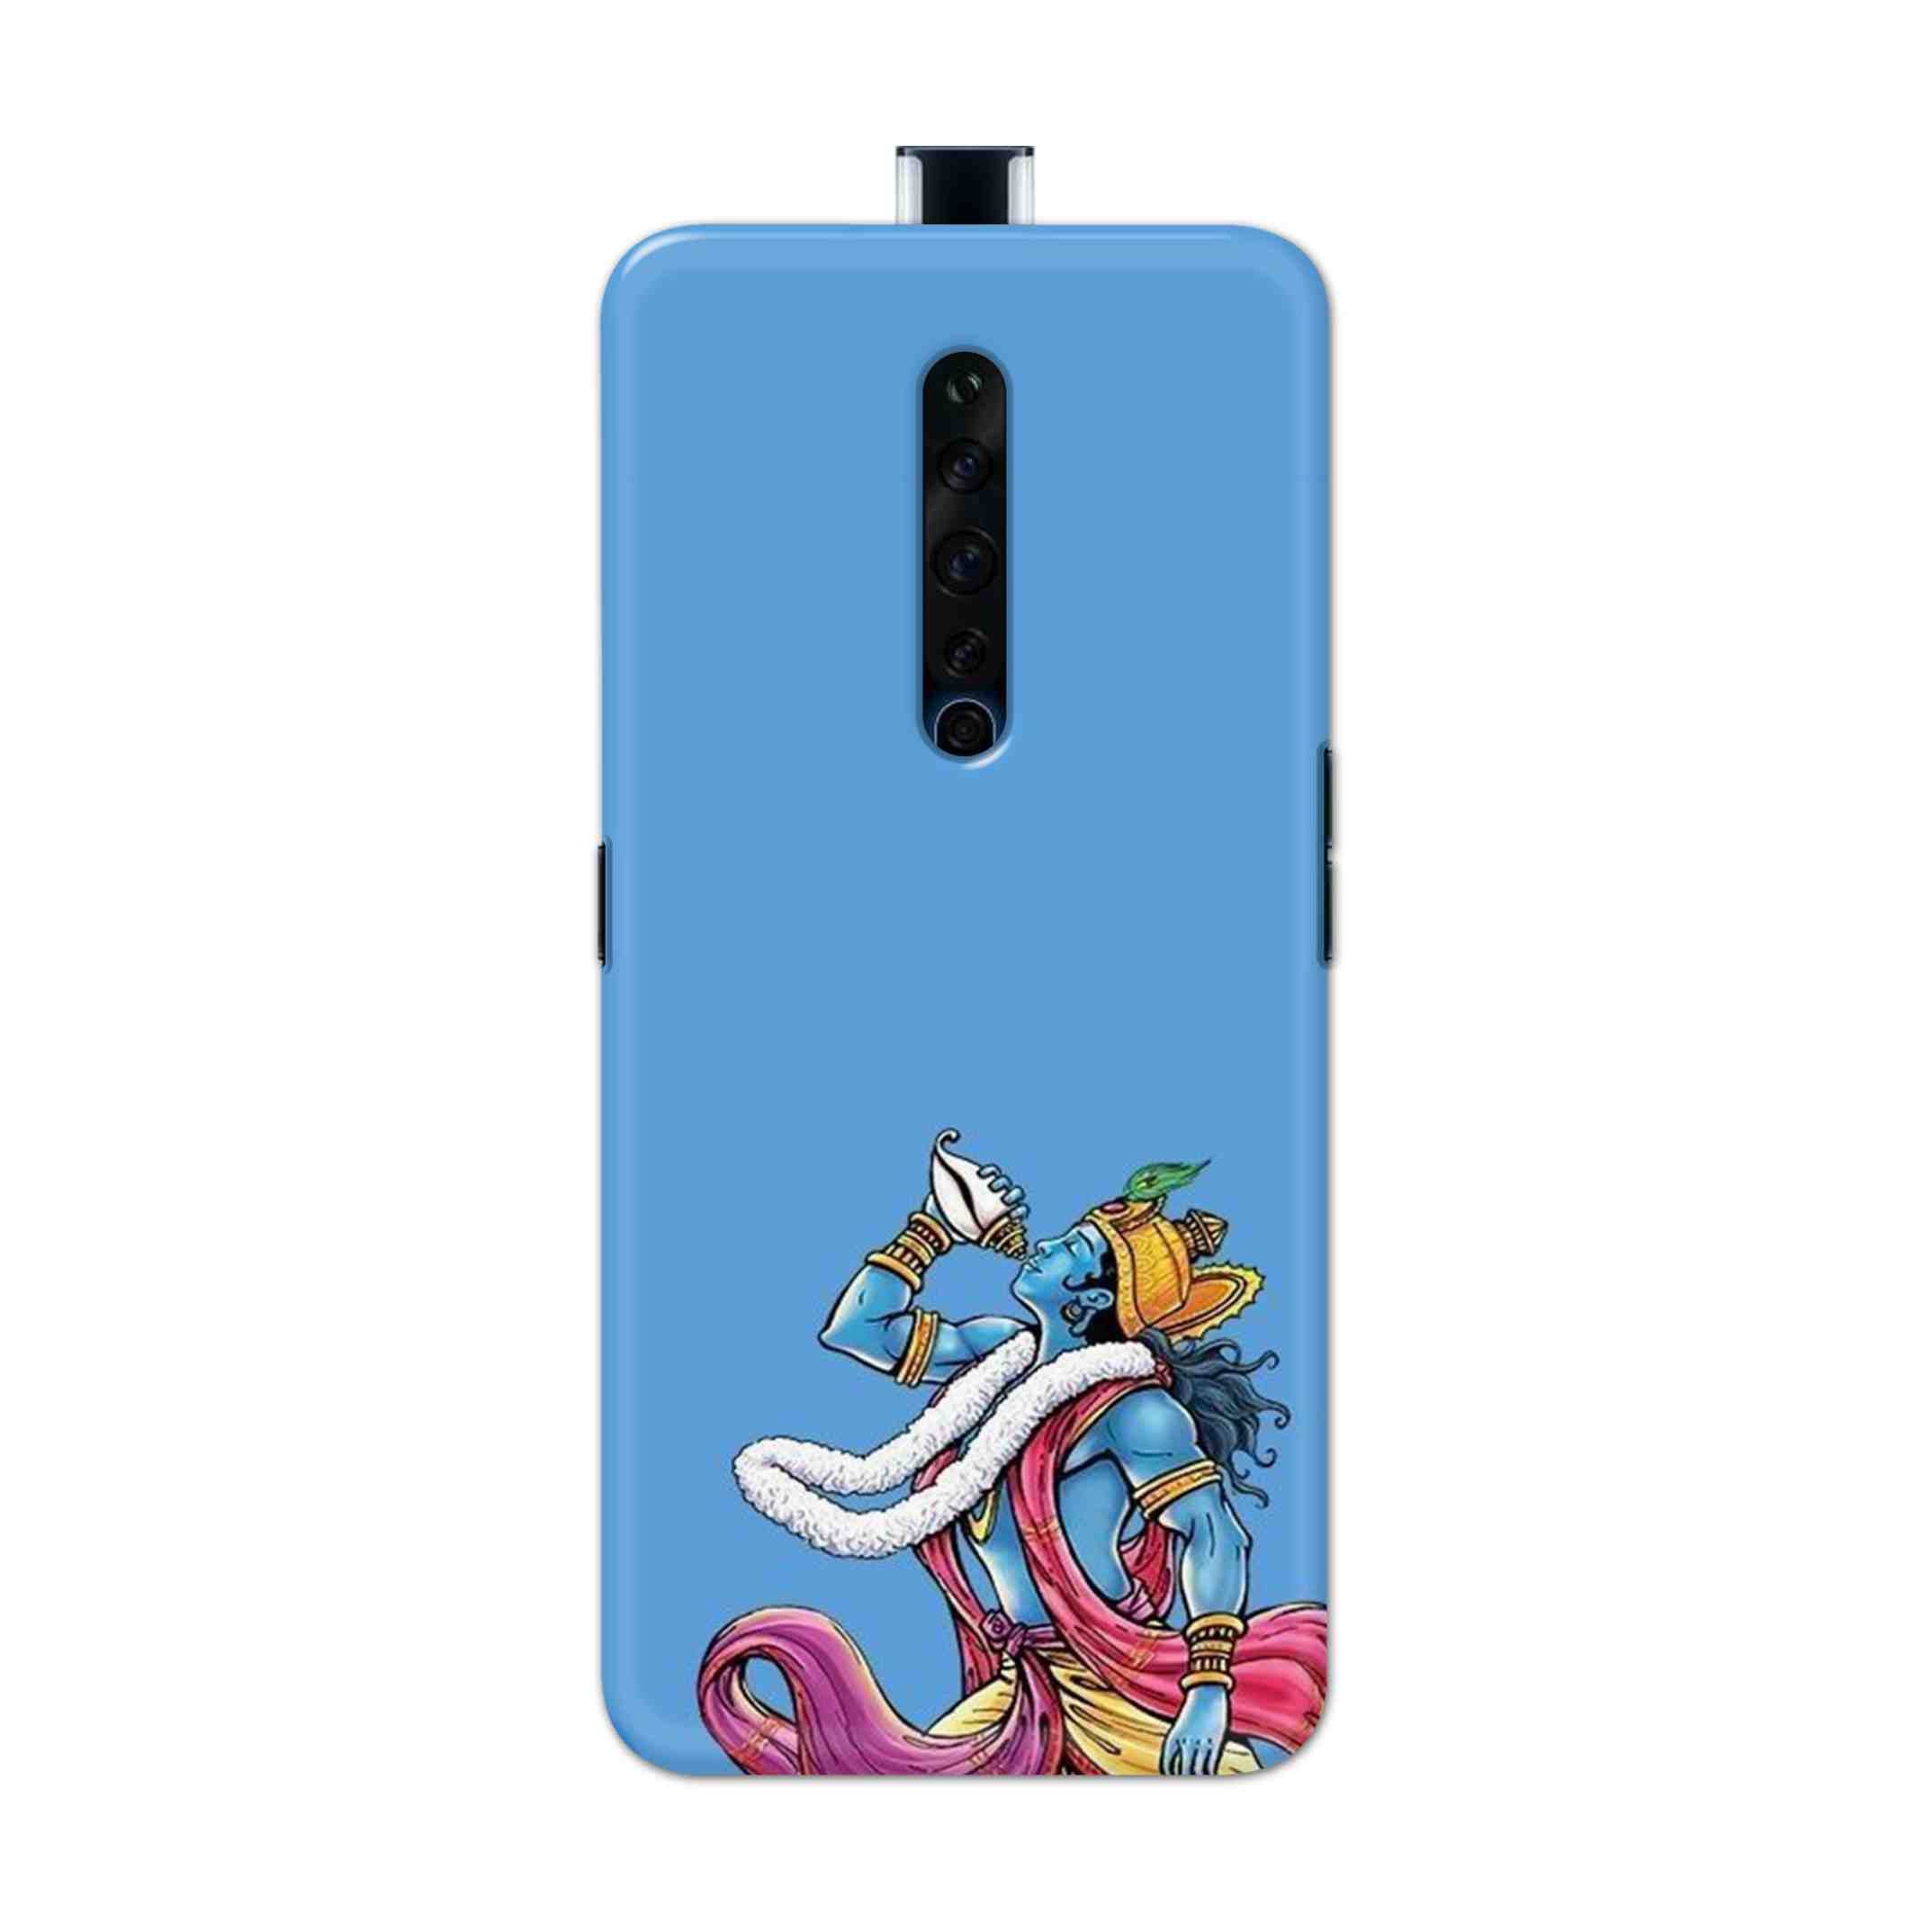 Buy Krishna Hard Back Mobile Phone Case Cover For Oppo Reno 2Z Online